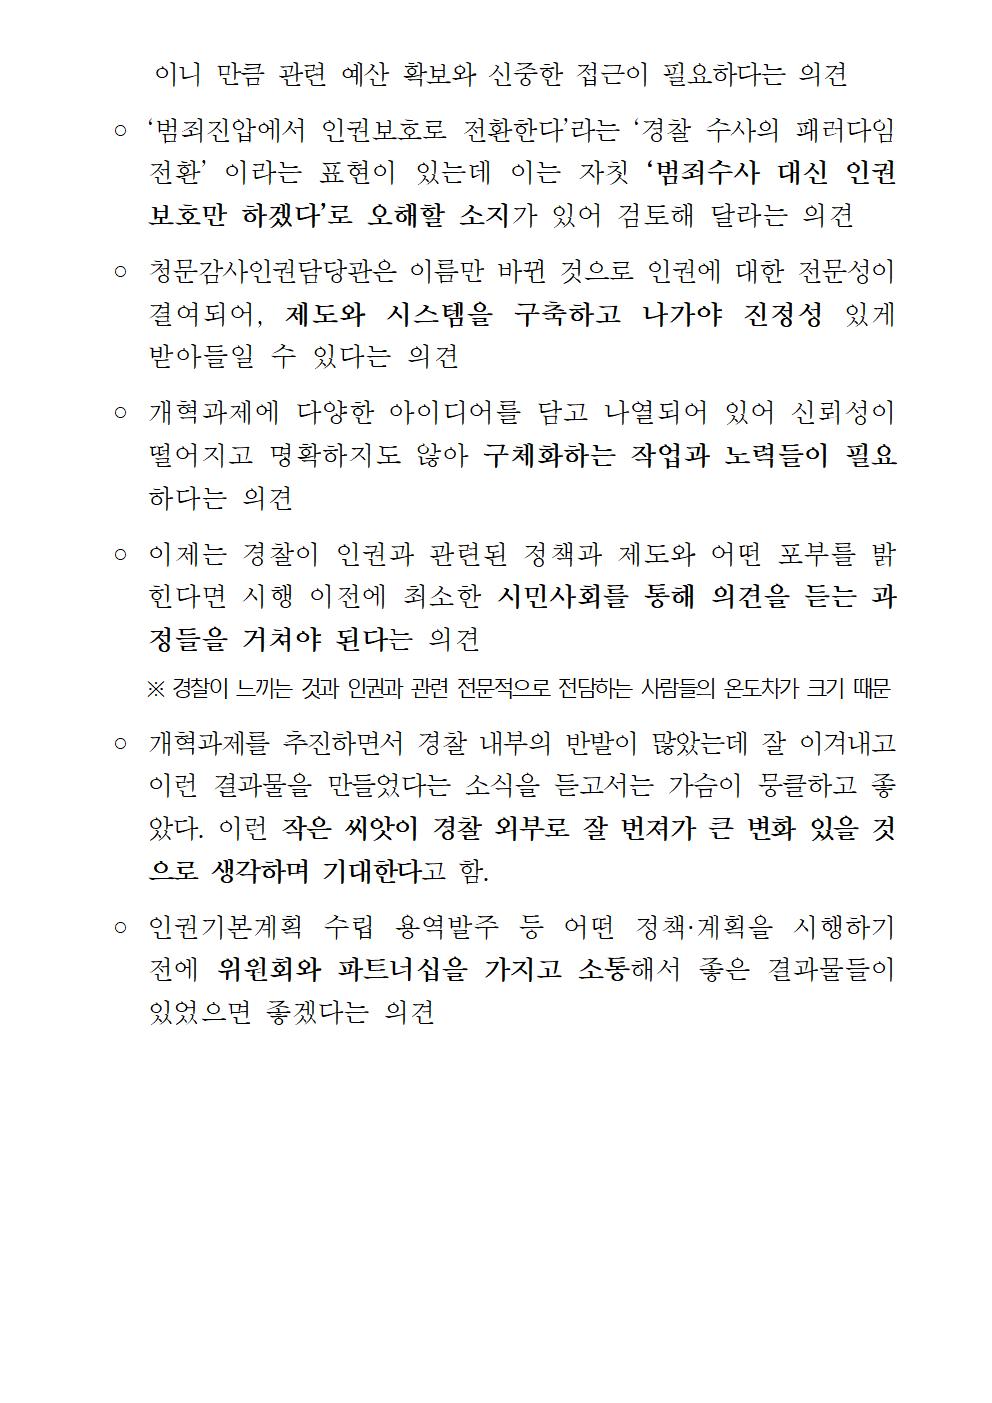 경찰청 인권위원회임시회의 개최 및 결과 아래설명